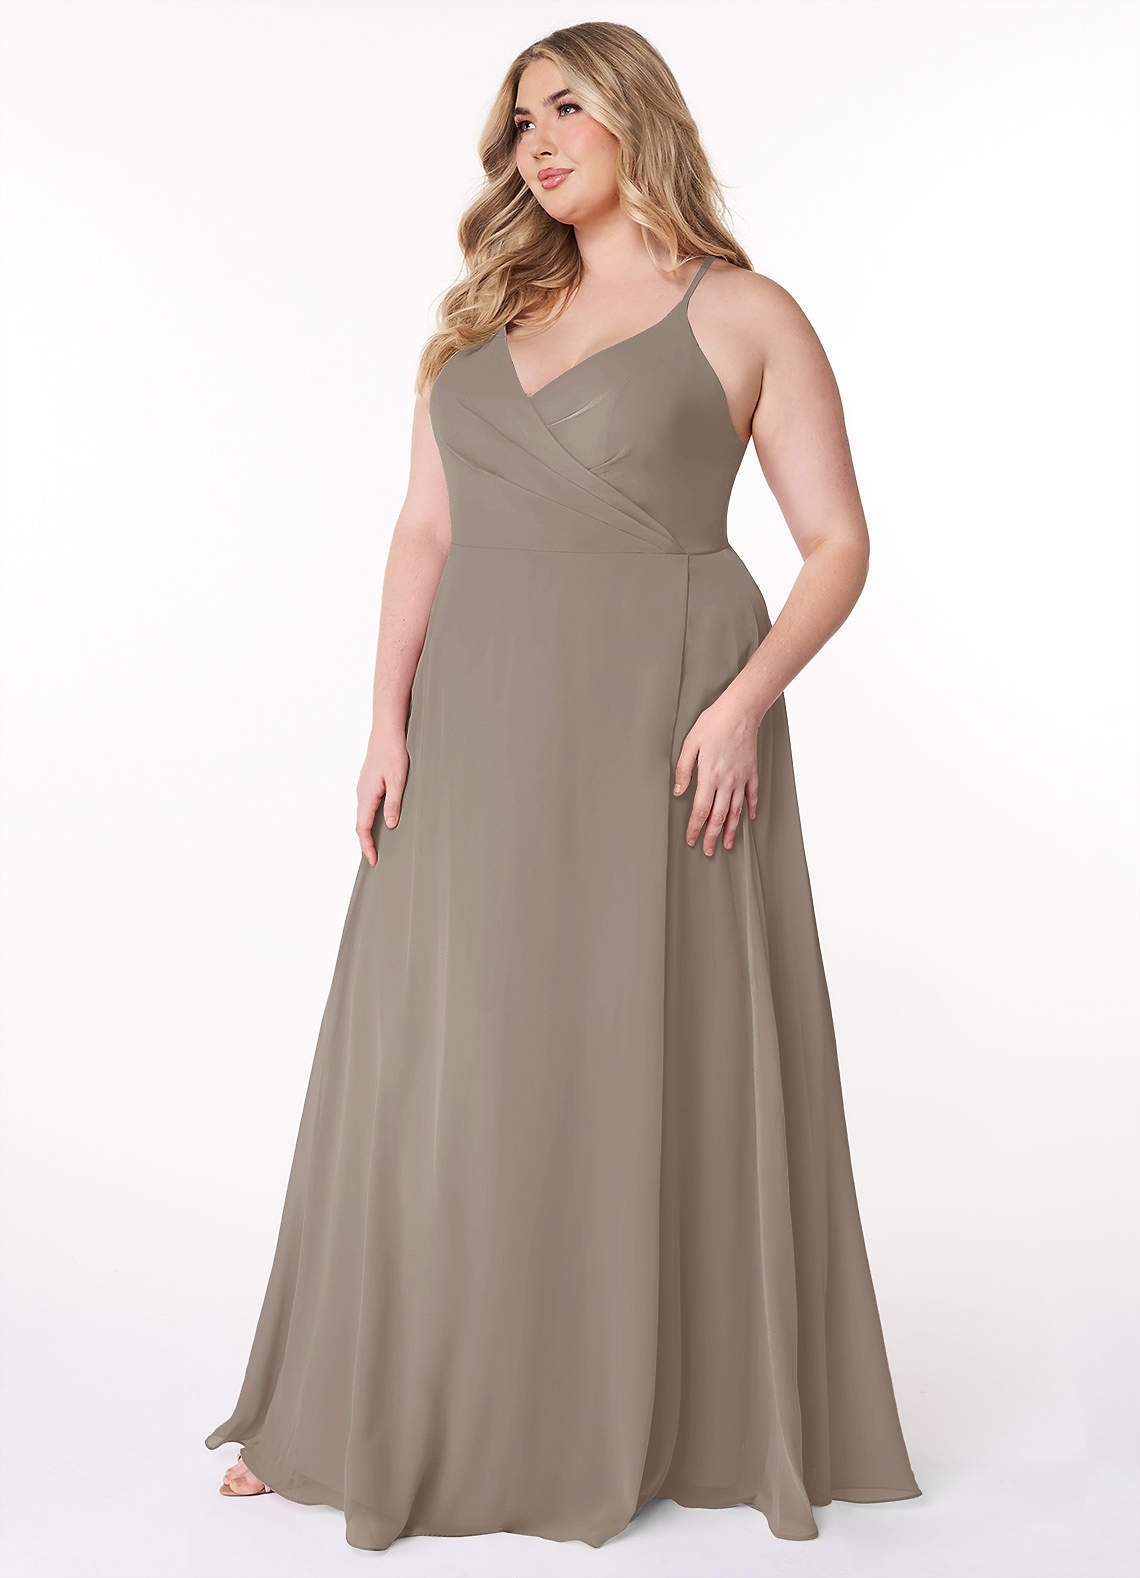 Azazie Davis Bridesmaid Dresses A-Line V-Neck Chiffon Floor-Length Dress image1